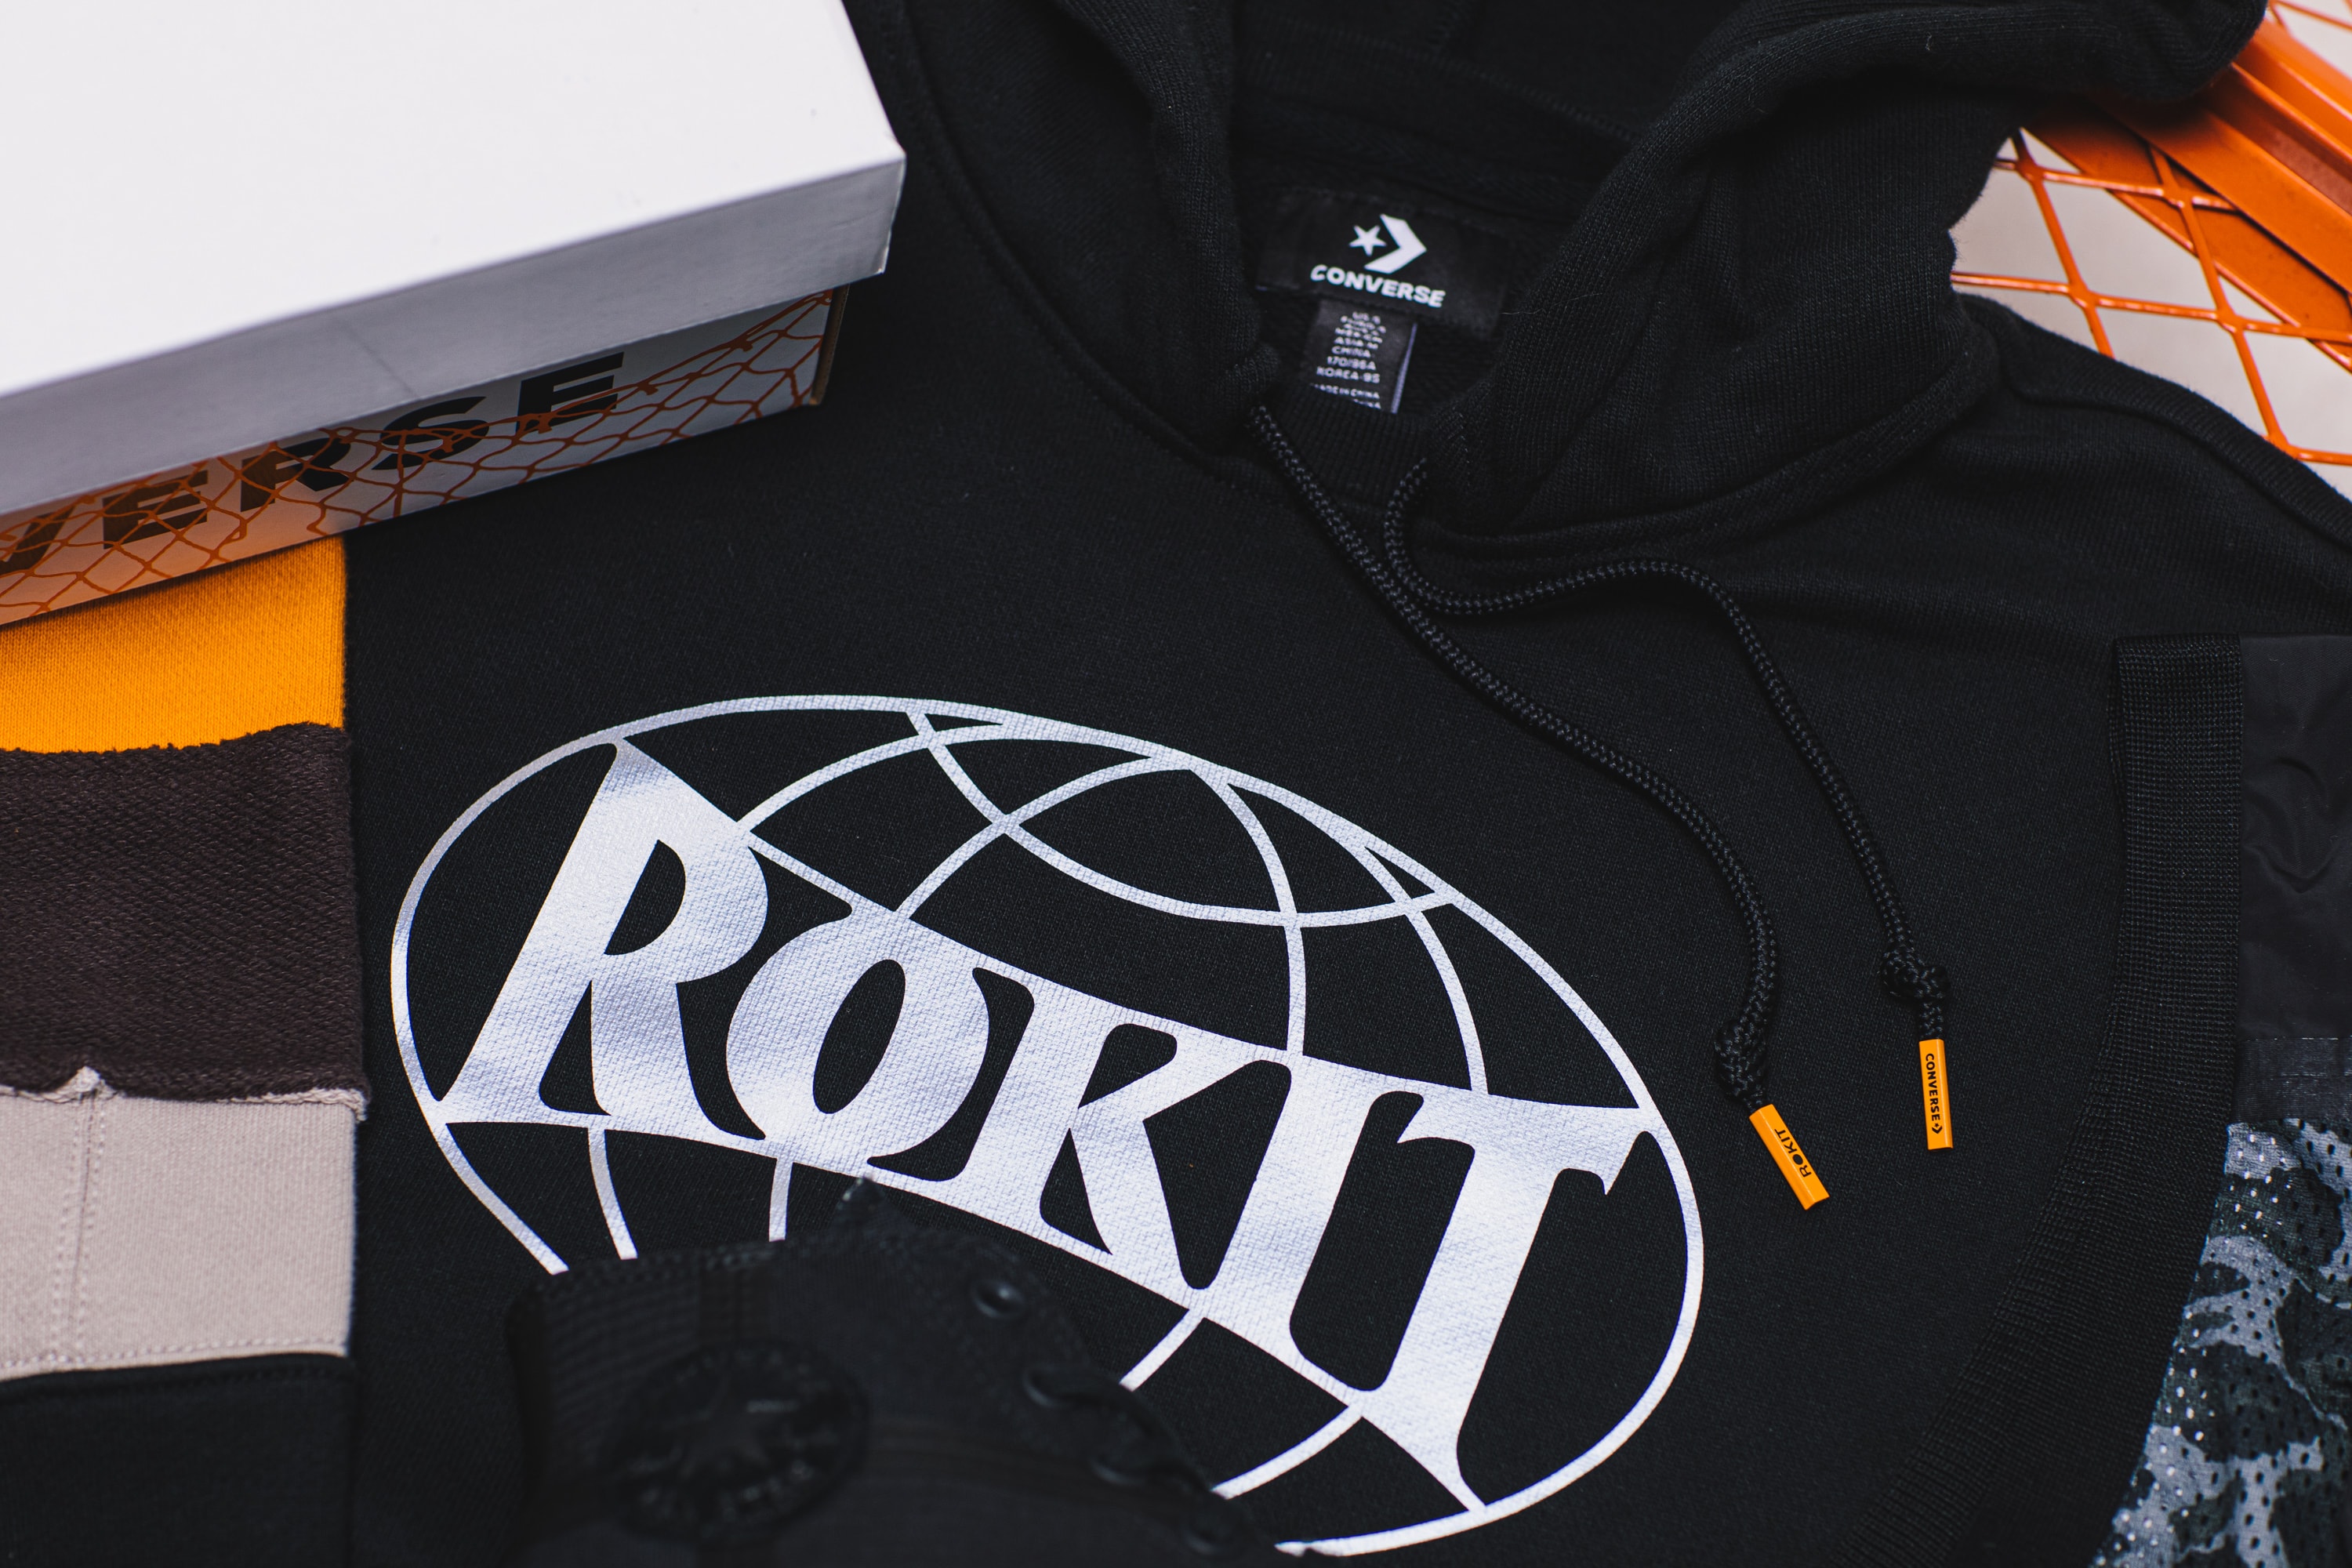 ROKIT x CONVERSE 全新联名系列发售详情公开